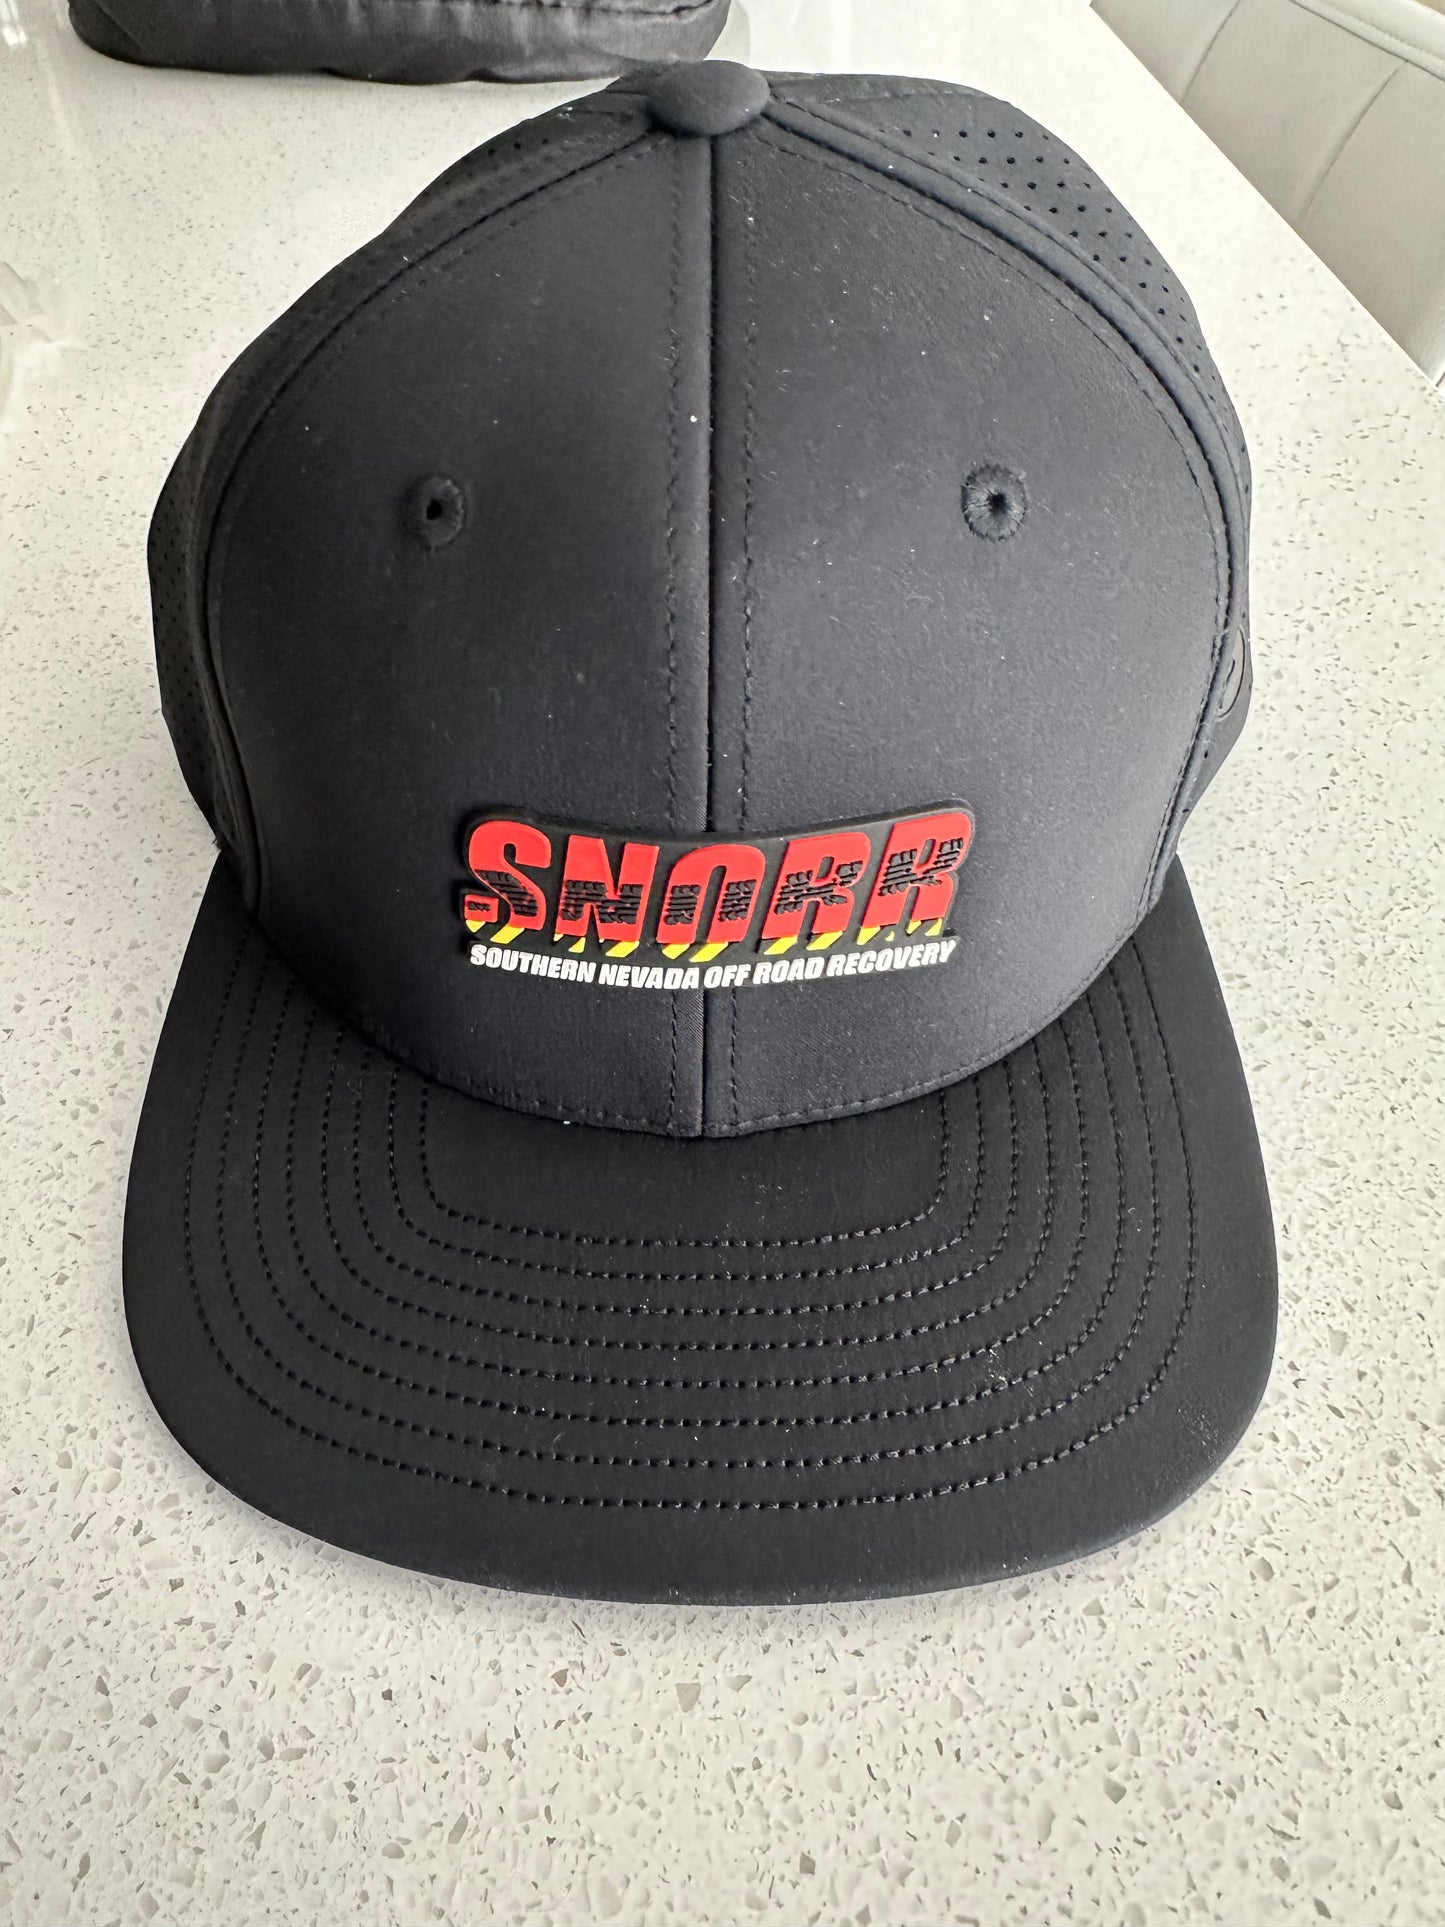 SNORR Logo'd Baseball Hat